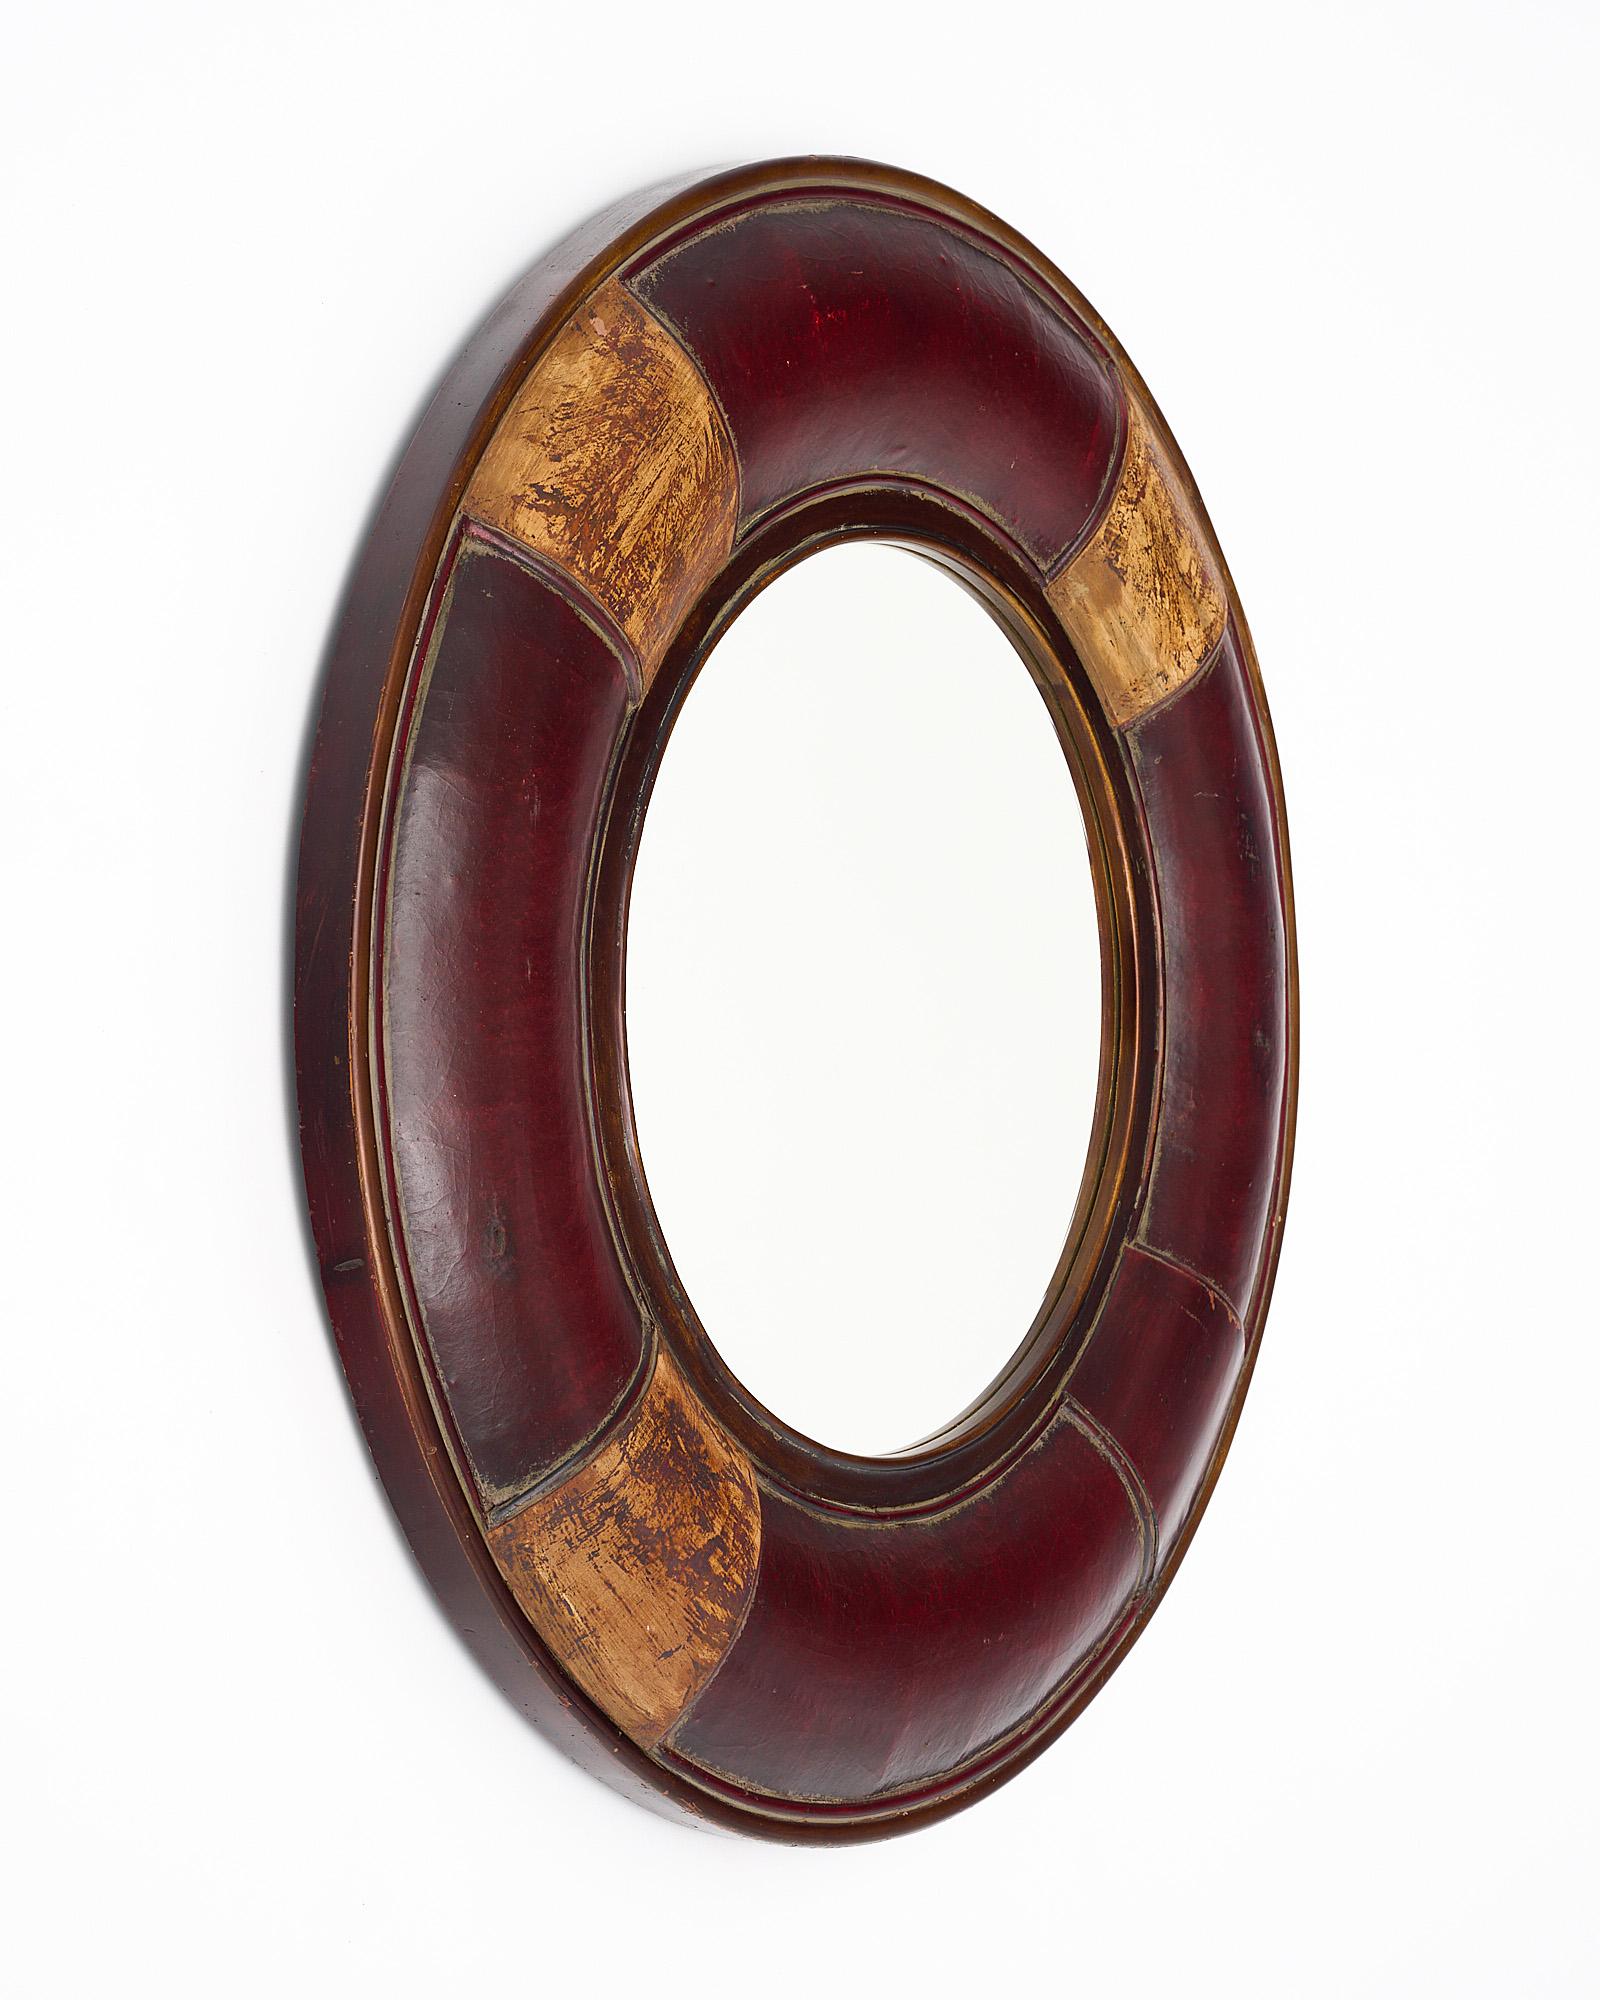 Miroir français composé d'un cadre circulaire recouvert de cuir marron. Cette pièce unique présente des accents dorés à la feuille et un miroir circulaire central.
